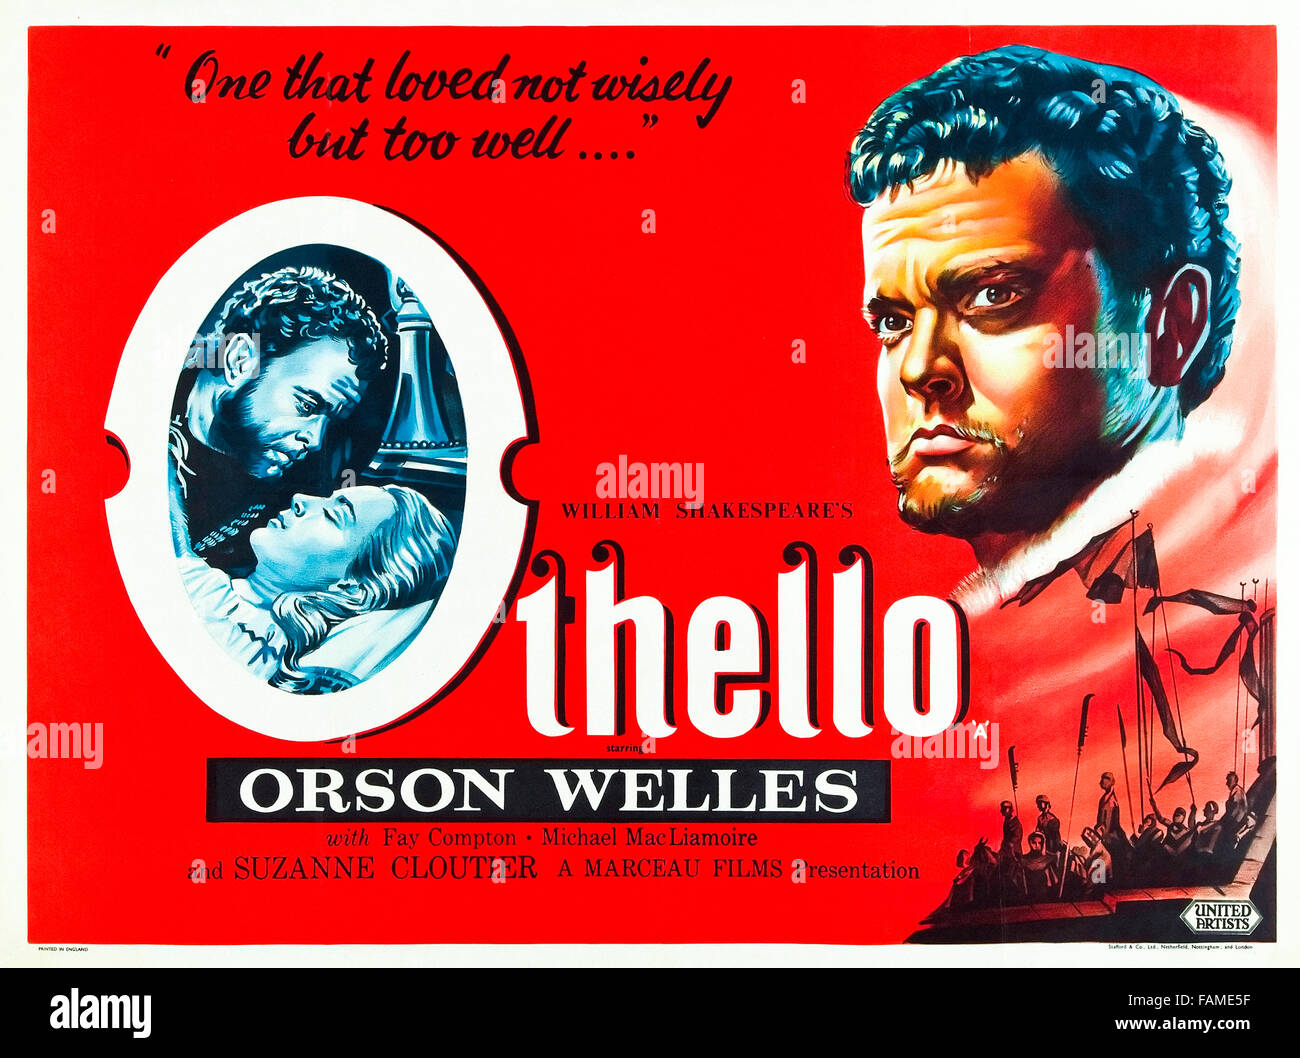 Otello (1951) diretto da Orson Welles e interpretato da Orson Welles, Micheál MacLiammóir, Robert Coote e Fay Compton. Welles ovvia difficoltà di produzione e un basso bilancio nel suo adattamento di Shakespeare's Othello che include la propria star performance come il Moro di Venezia. Foto Stock